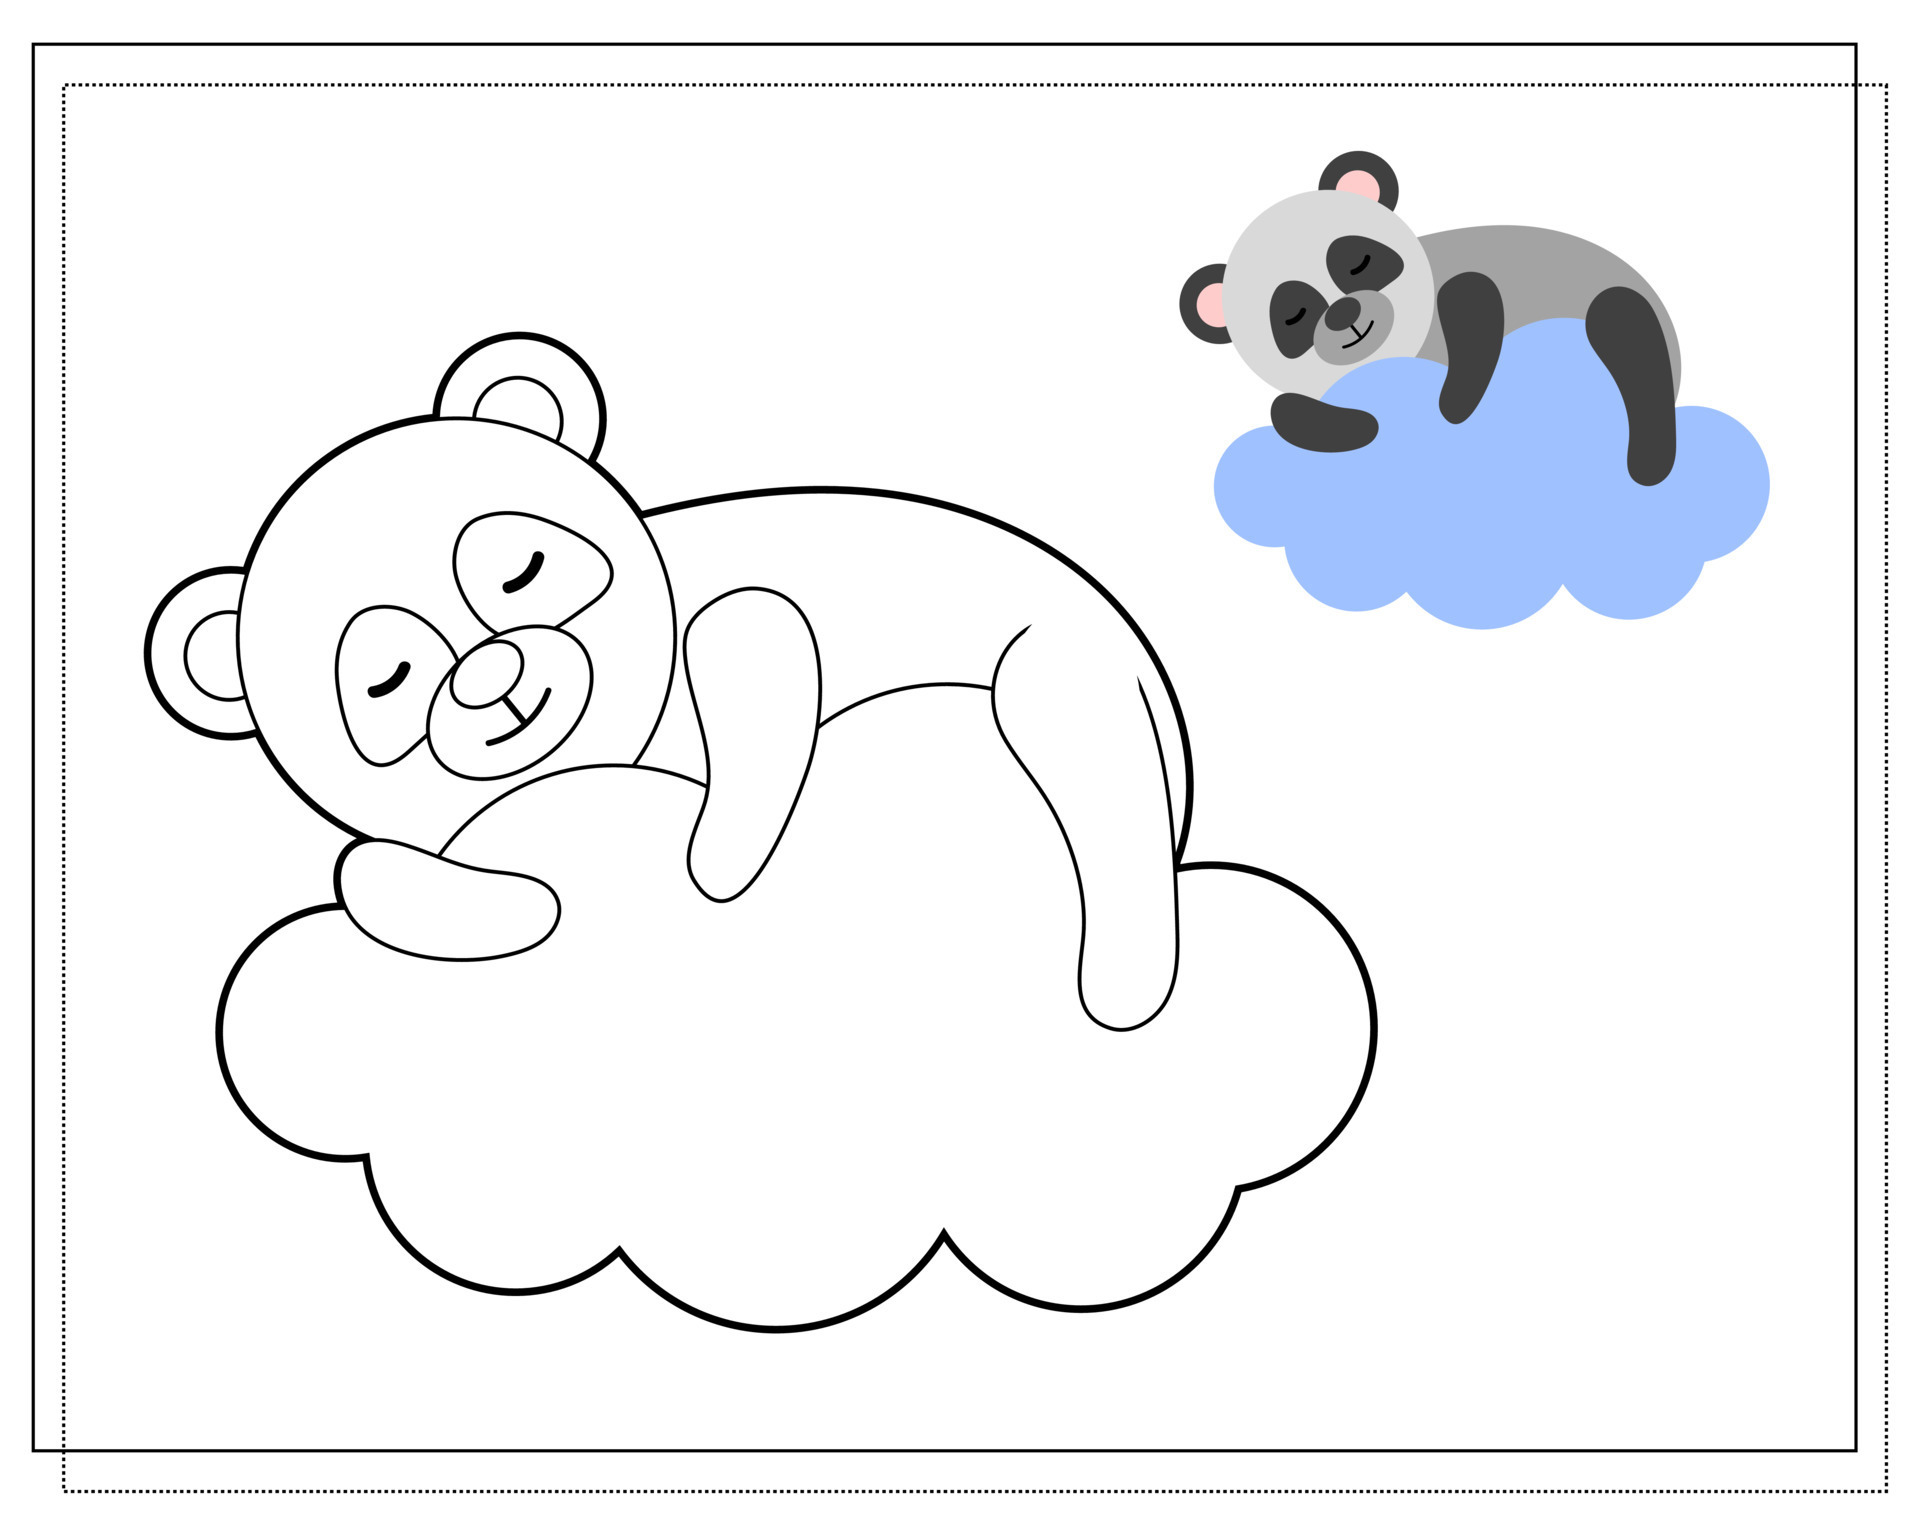 Vetores de Livro De Colorir Para Crianças Desenhe Um Panda De